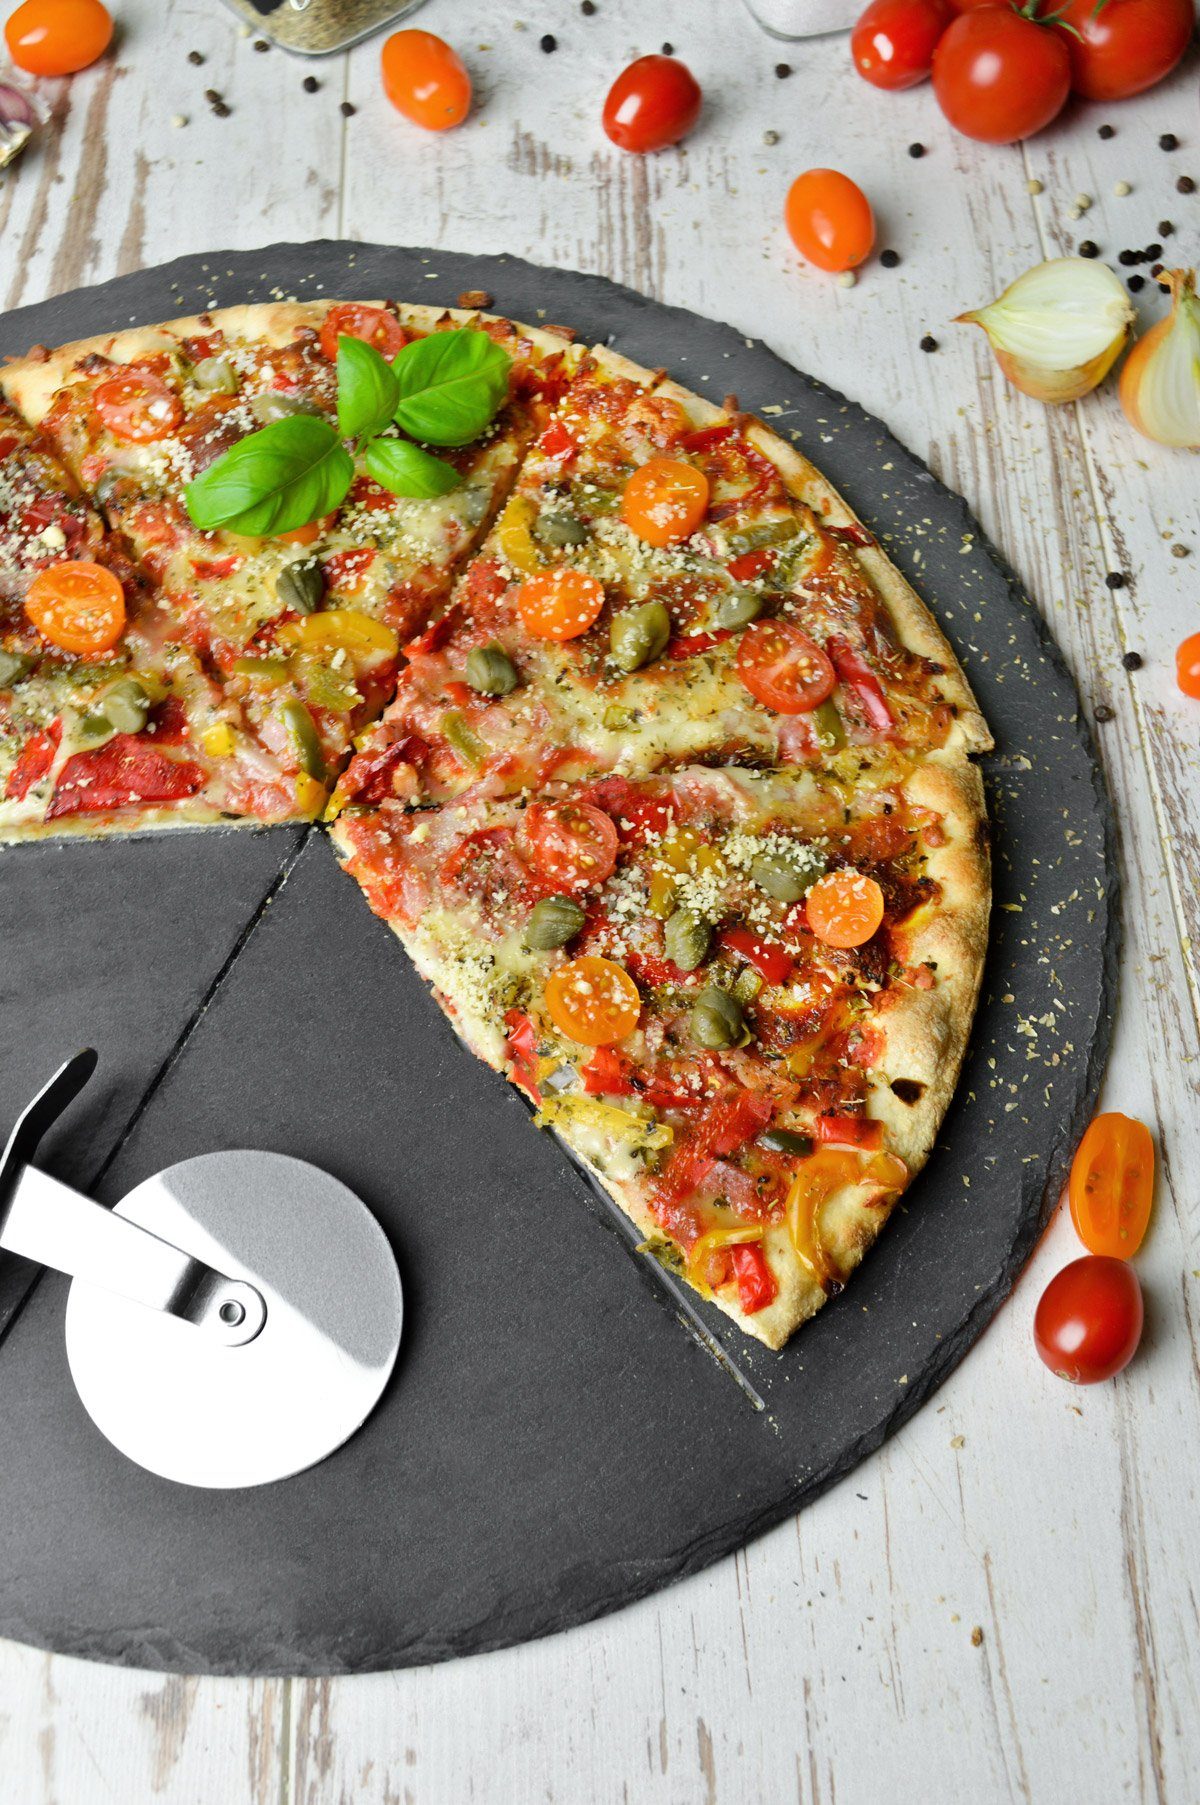 Pizzaschneidebrett mit Pizzabrett Pizzateller ø36cm Schiefer Sendez Pizzaschneider aus